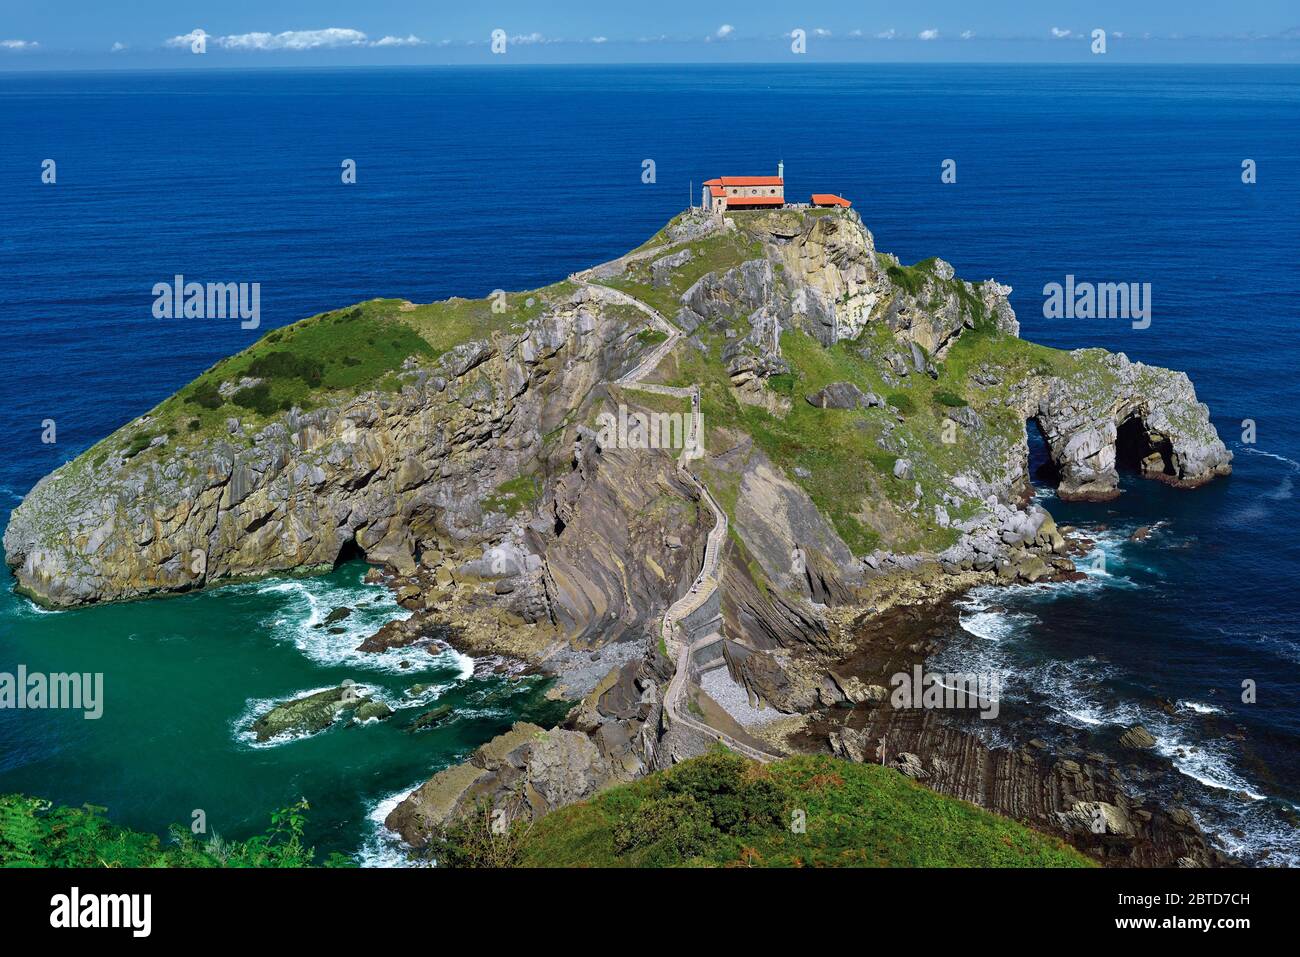 Felsige Insel mit kleiner Kapelle und Steintreppe, die zu ihr führt Stockfoto